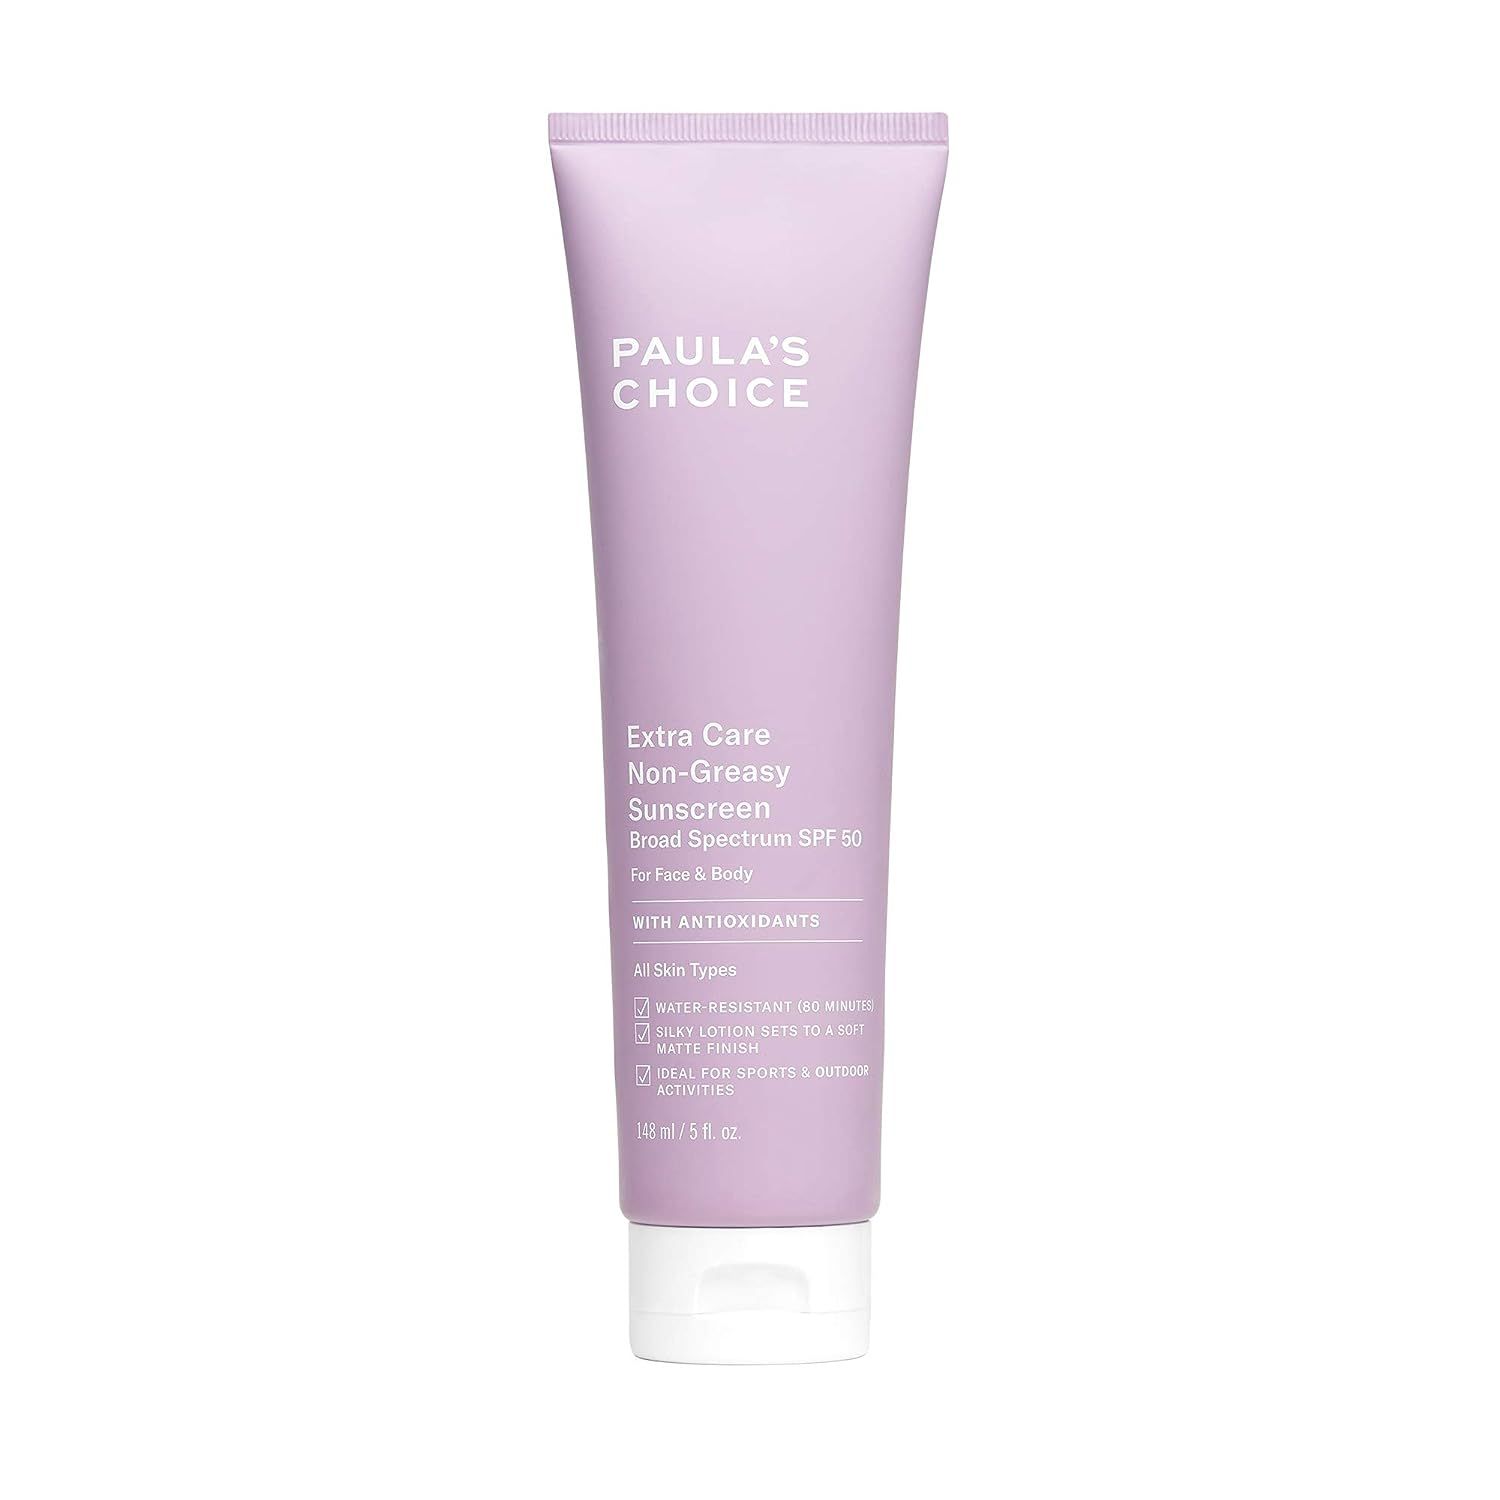 Paula's Choice Extra Care Non Greasy, Oil Free Face & Body Sunscreen SPF 50, UVA & UVB Protection... | Amazon (US)